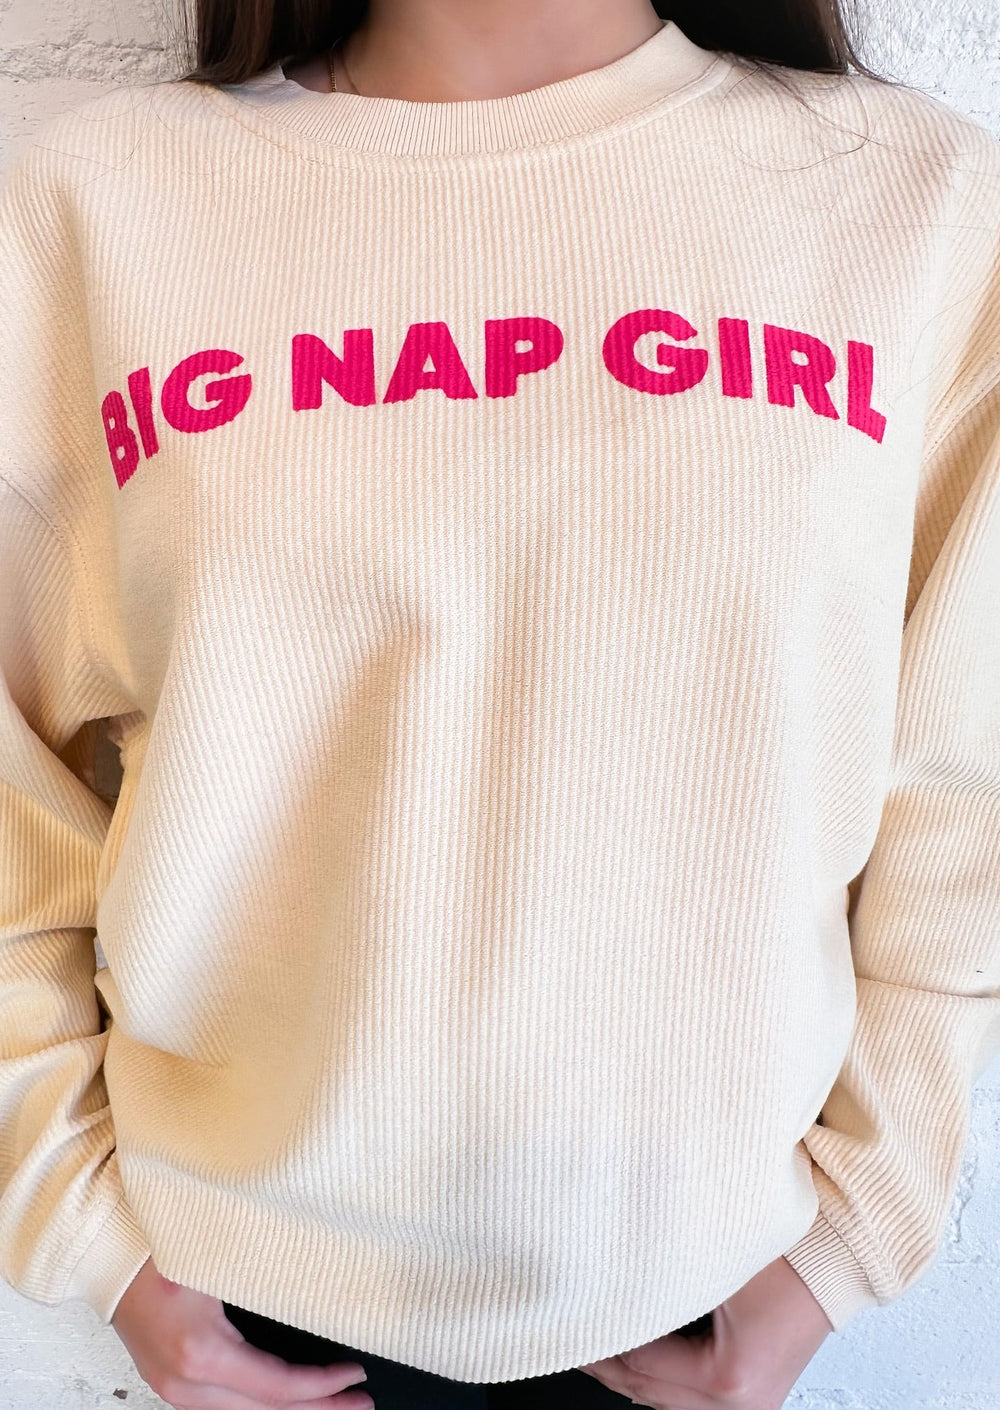 Big Nap Girl Neon Corded Sweatshirt, Tops, Adeline, Adeline, dallas boutique, dallas texas, texas boutique, women's boutique dallas, adeline boutique, dallas boutique, trendy boutique, affordable boutique